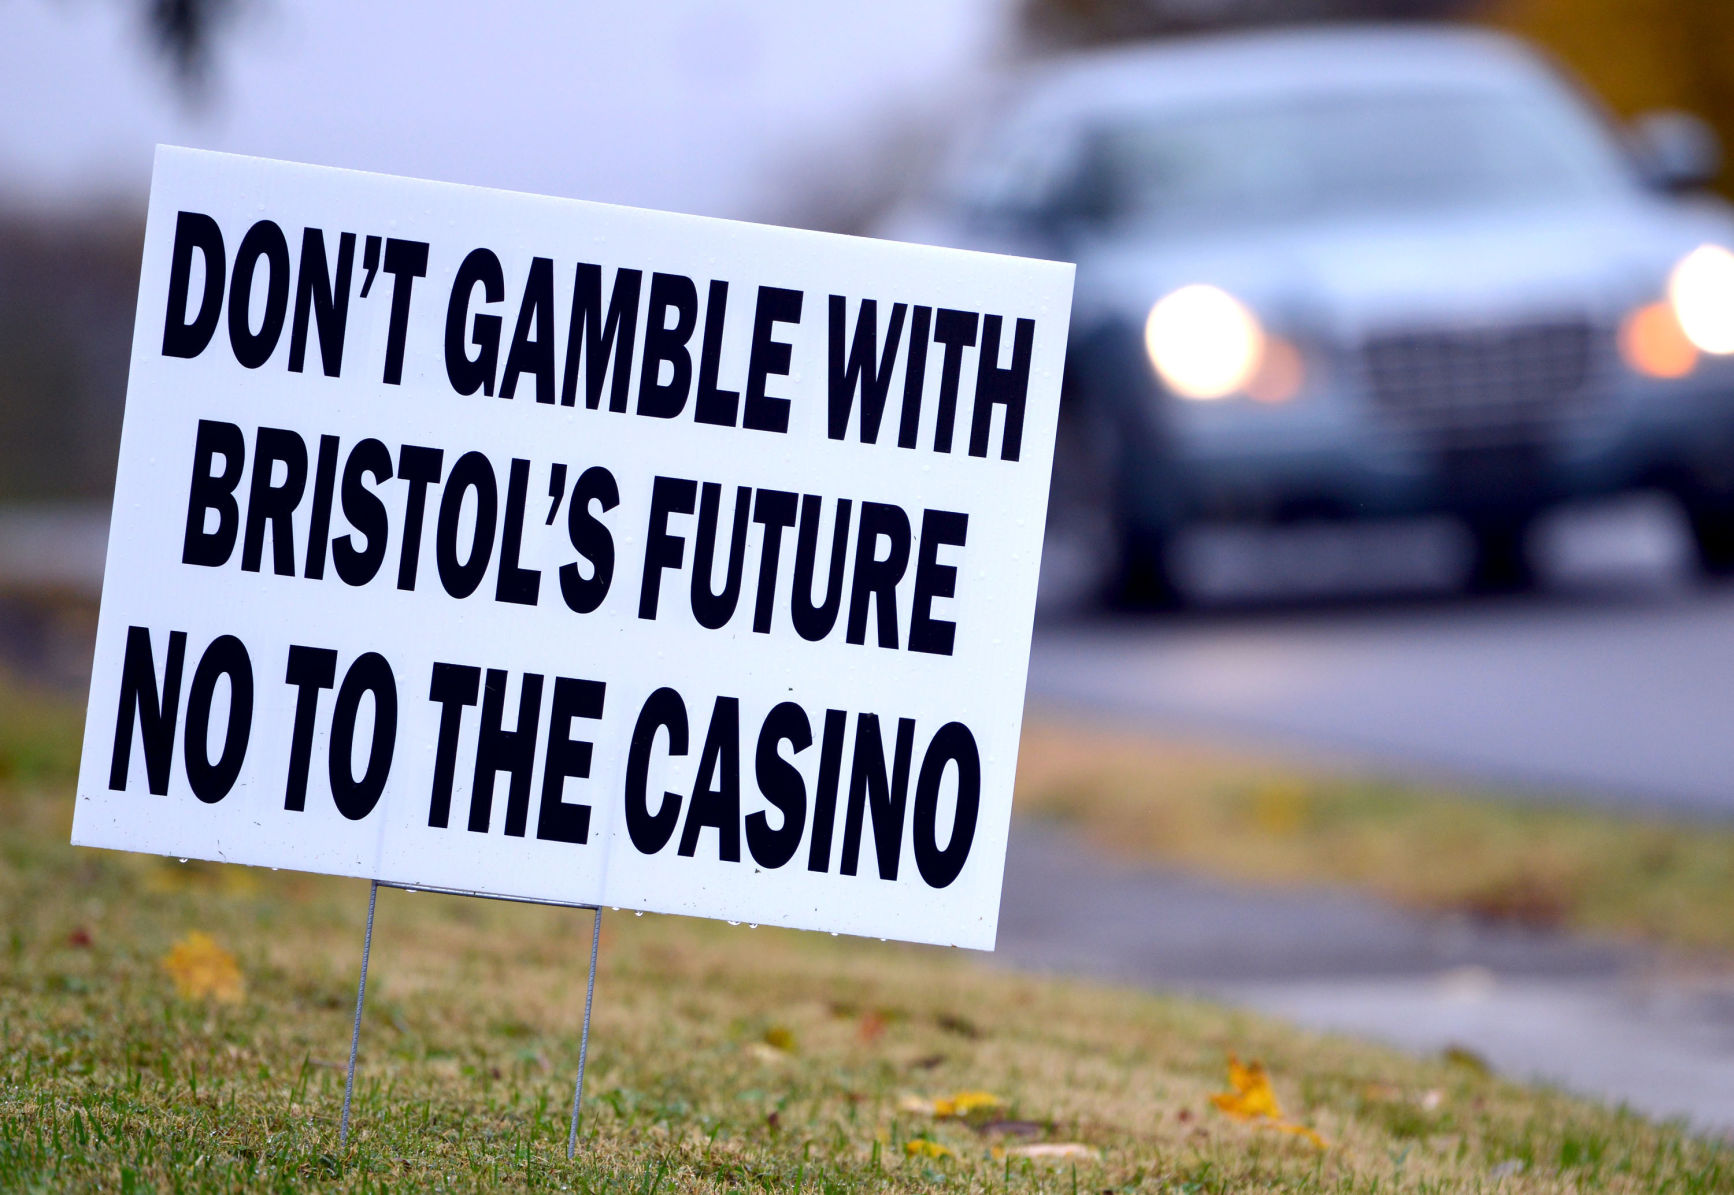 casino at bristol mall proposed